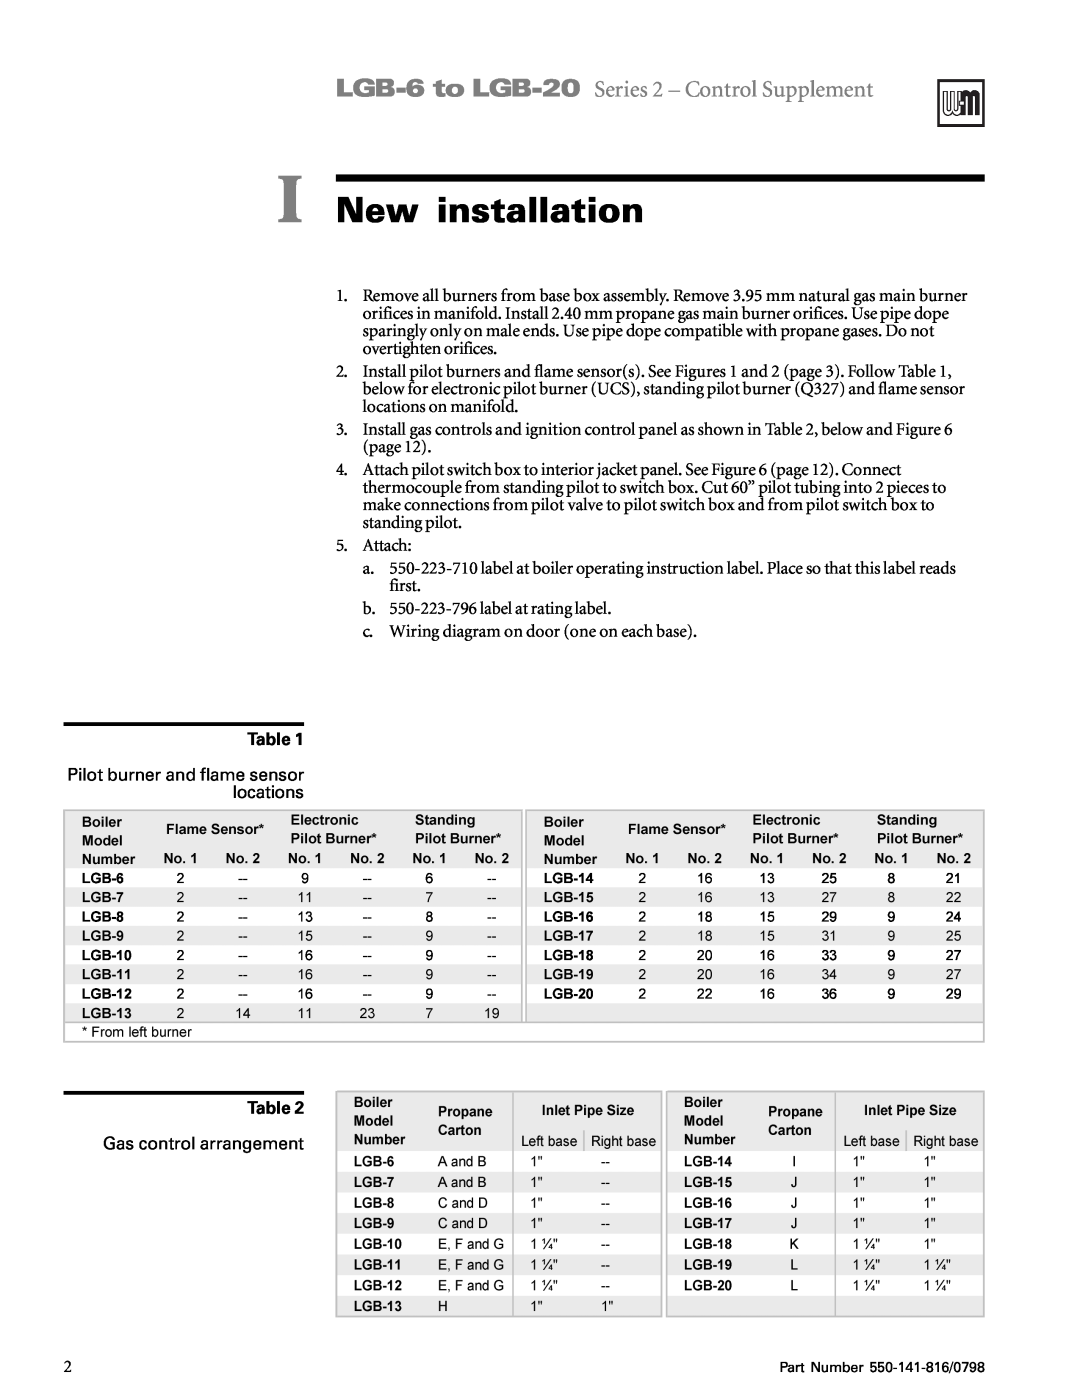 Weil-McLain 6-20 Series I New installation, LGB-6to LGB-20 Series 2 - Control Supplement, 1XPEHU, 3URSDQH, 6WDQGLQJ 